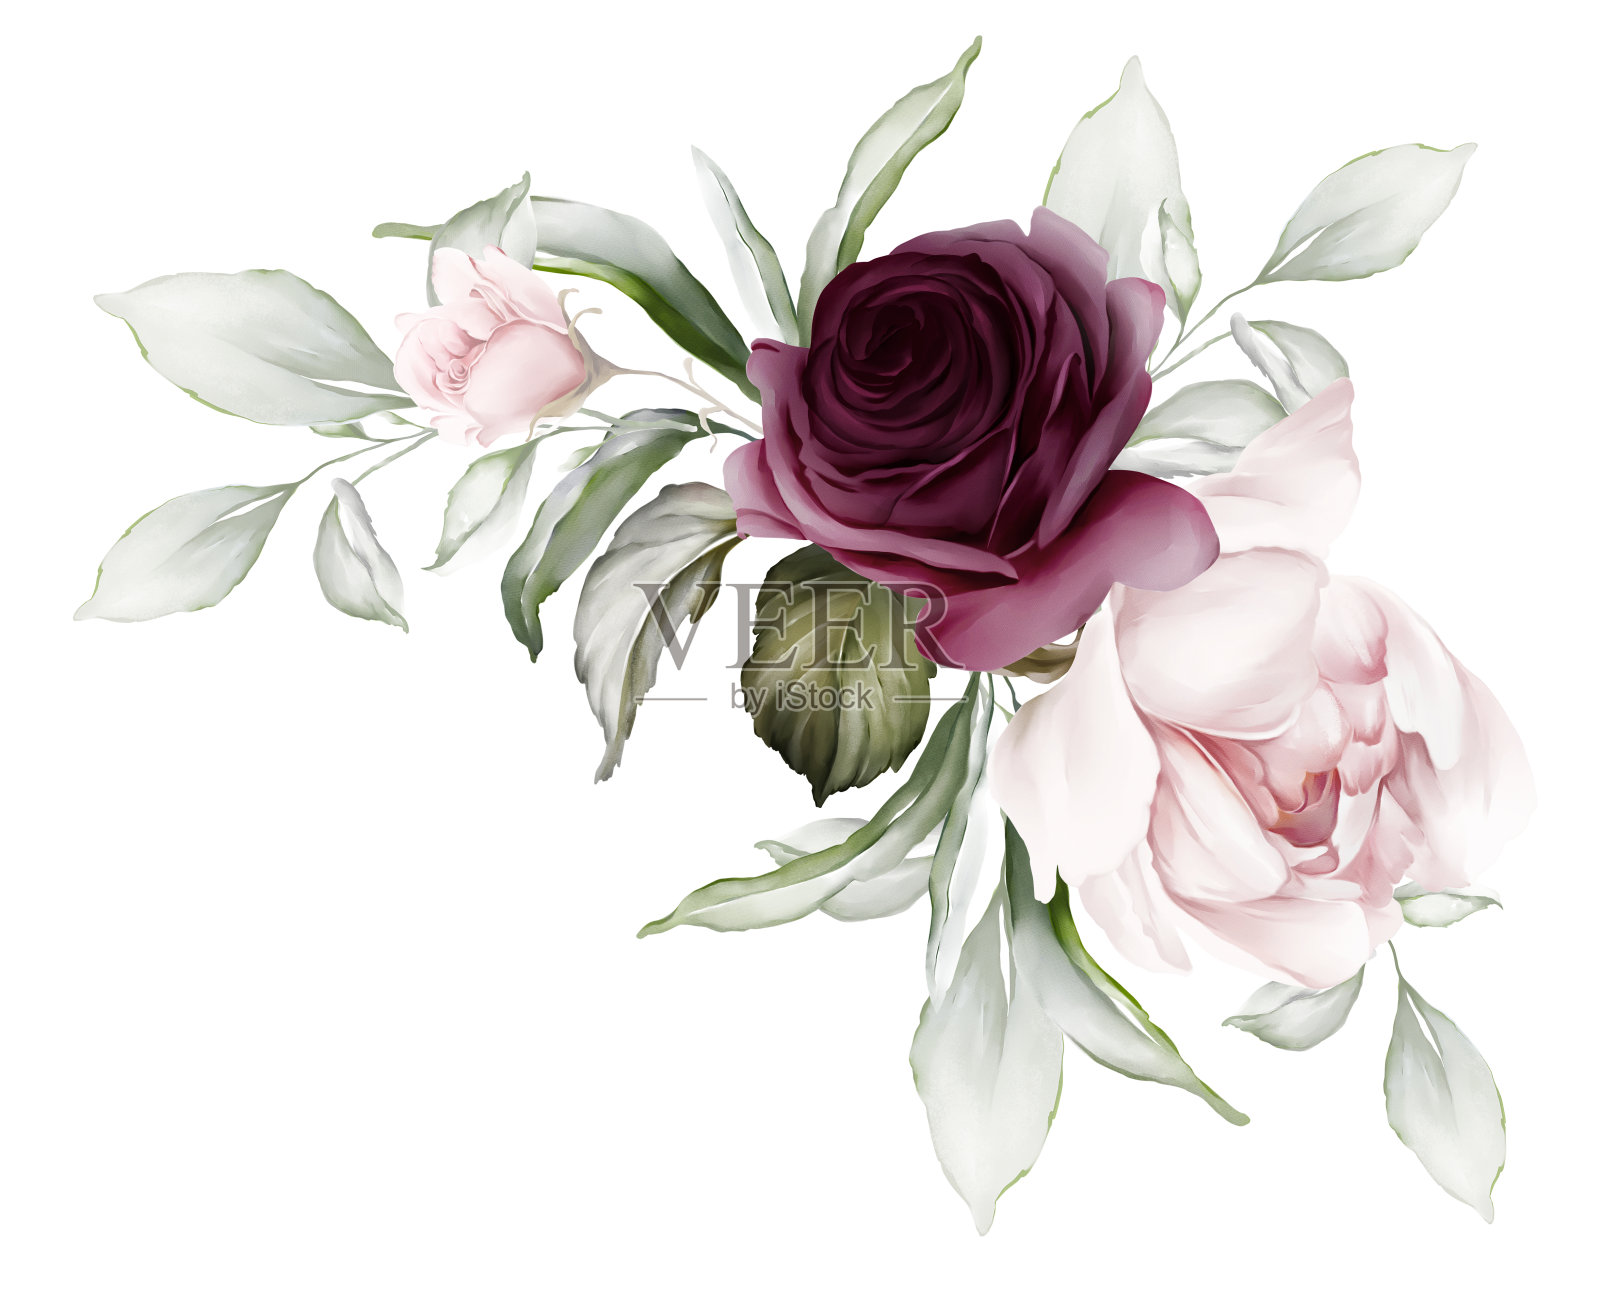 花型构图有紫色的玫瑰和娇嫩的牡丹。水彩风格的贺卡插画图片素材